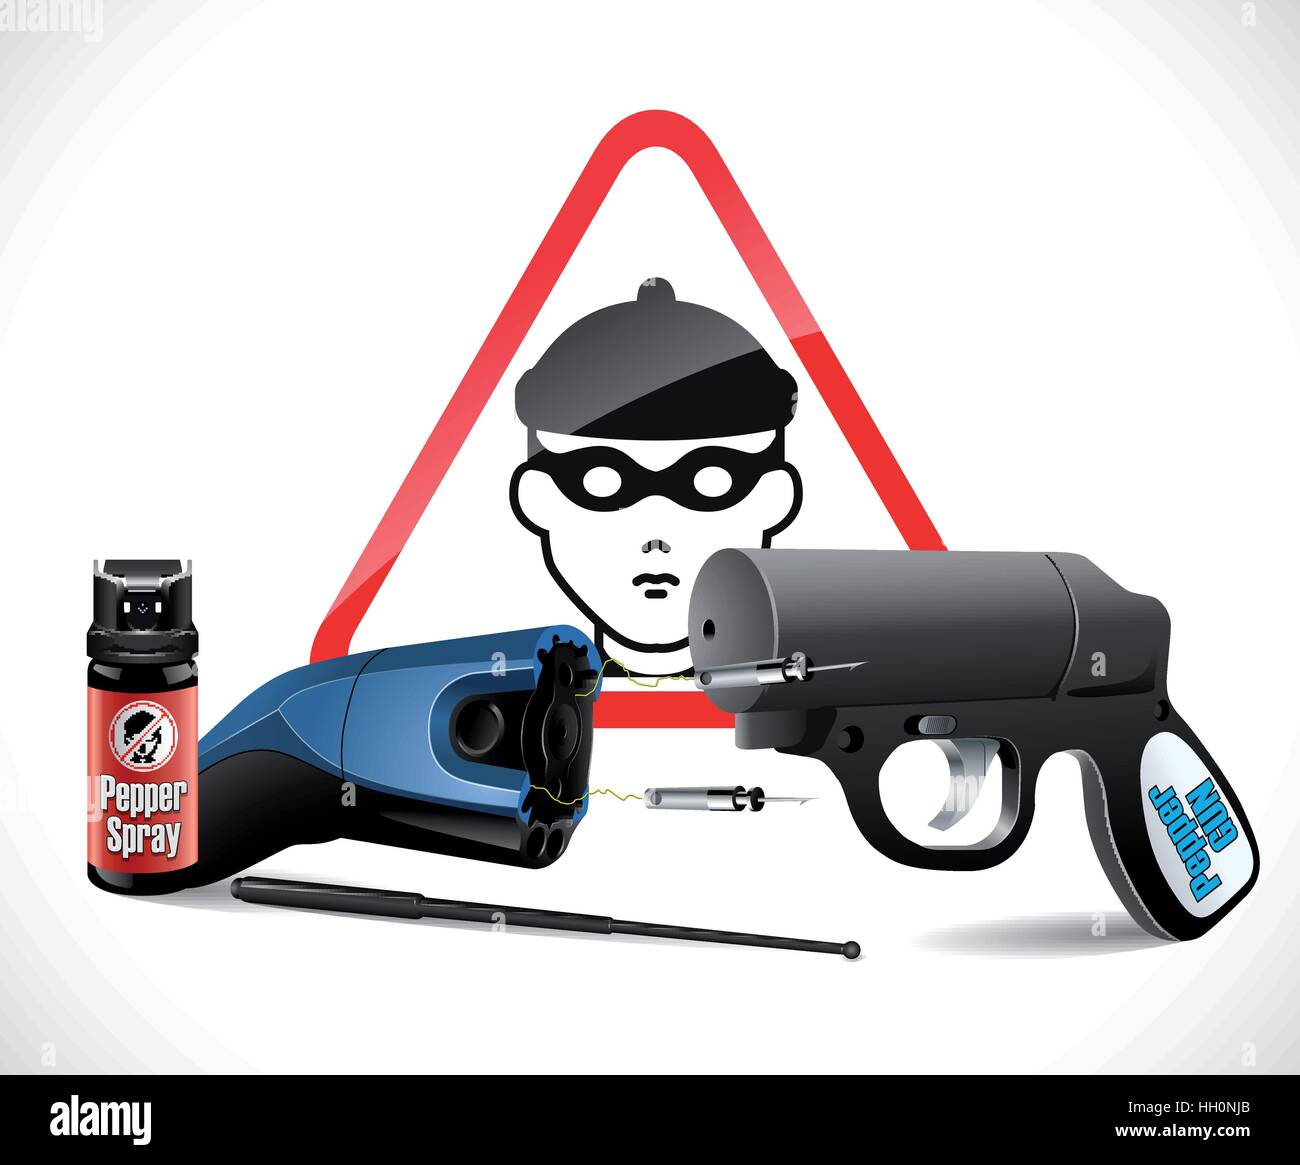 Self defense weapons - taser, pepper spray and pepper gun Stock Vector